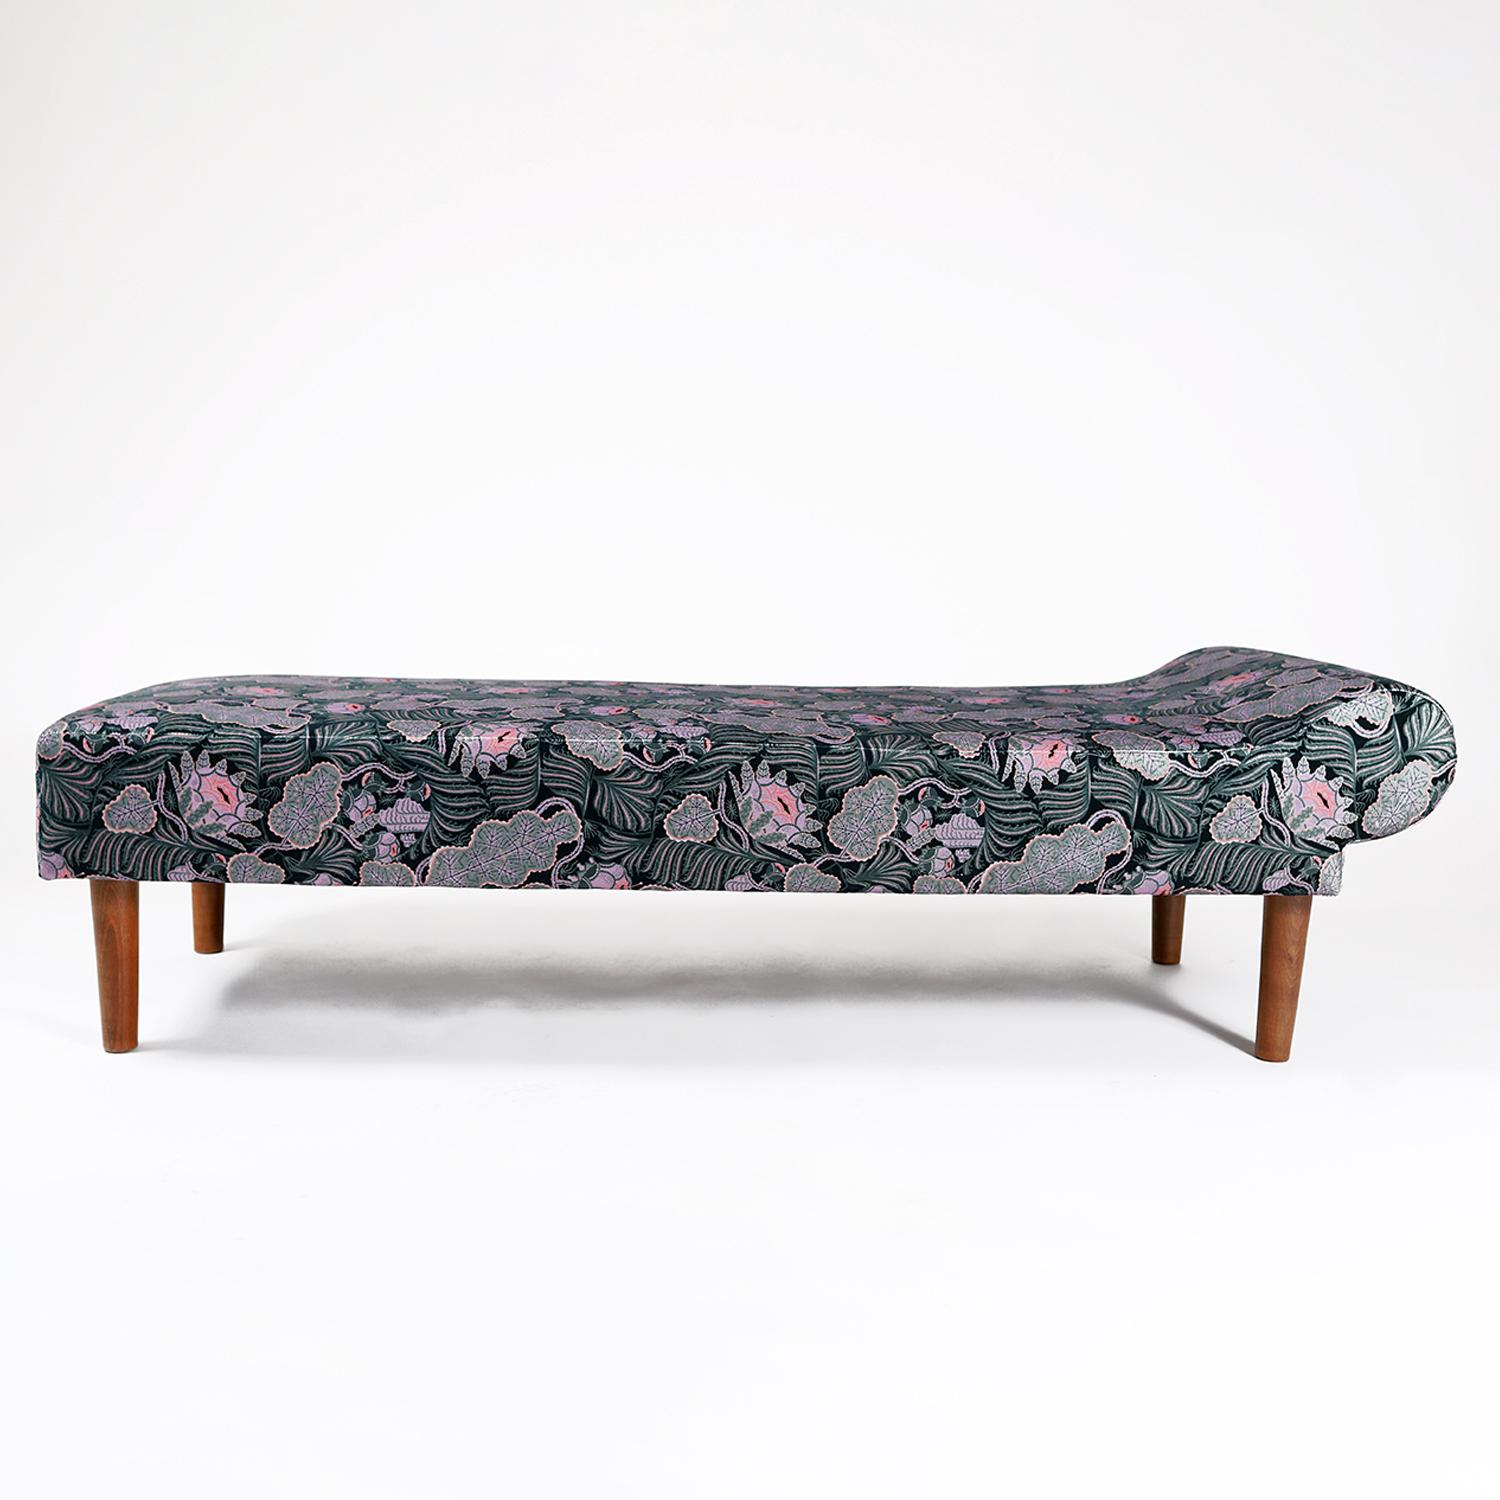 Ein Tagesbett im skandinavischen Design der 1940er Jahre. Kürzlich neu bezogen mit einem verspielten, von Klaus Haapaniemi entworfenen Textil namens 